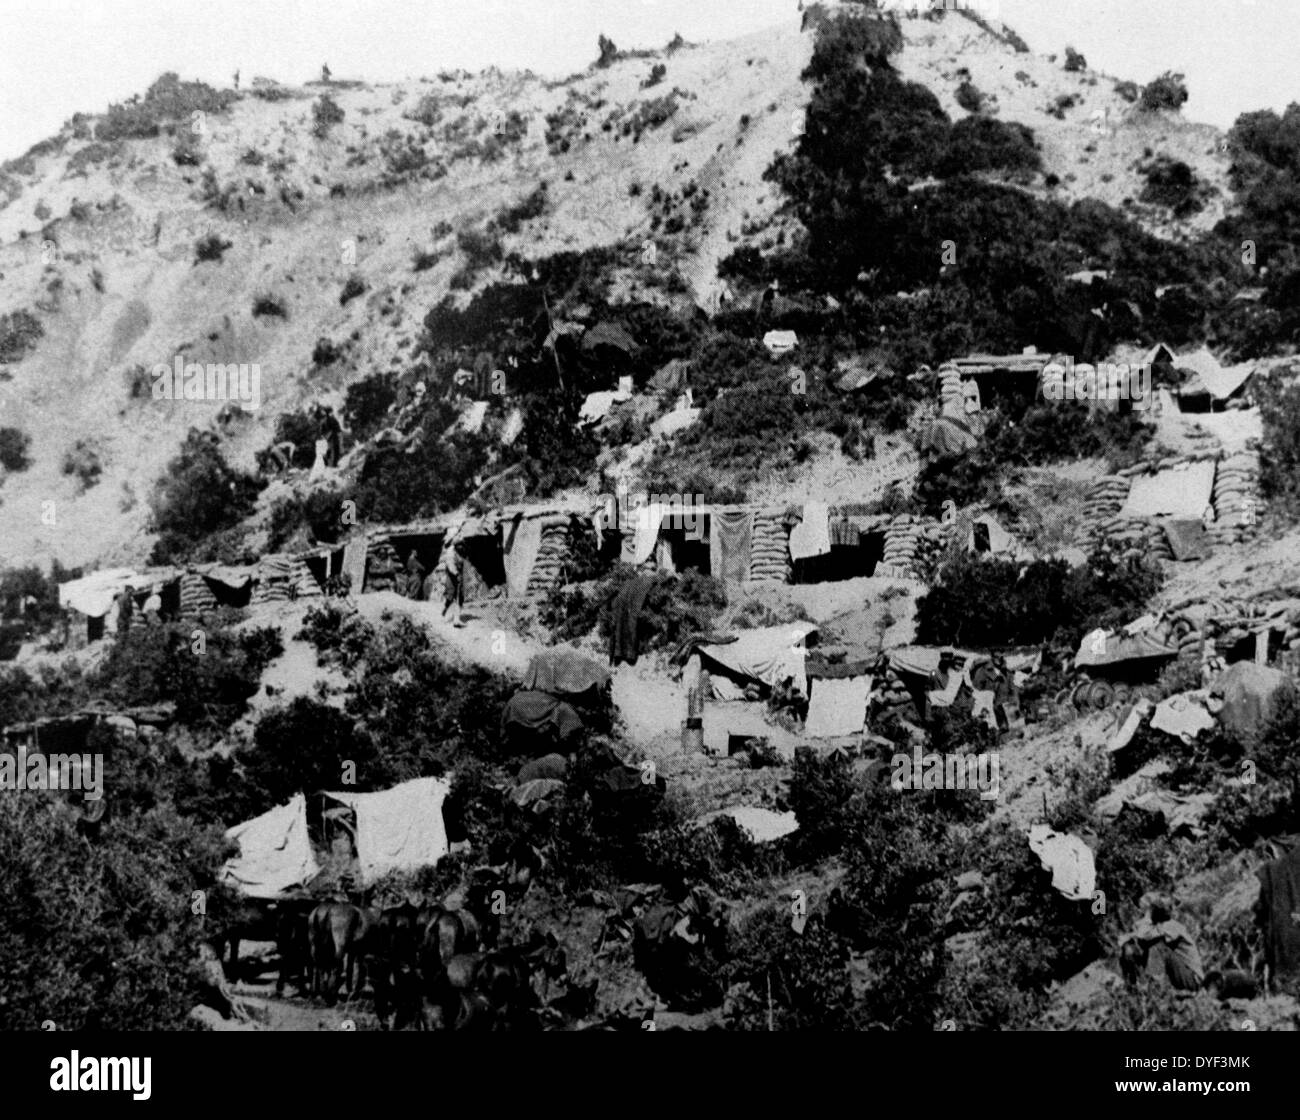 Une photographie de la Première Guerre mondiale, montrant une installation provisoire pour les troupes sur une colline. L'approvisionnement et les sacs de sable empilés forment des murs pour s'abriter. Première Guerre mondiale, vers 1914-1918. Banque D'Images